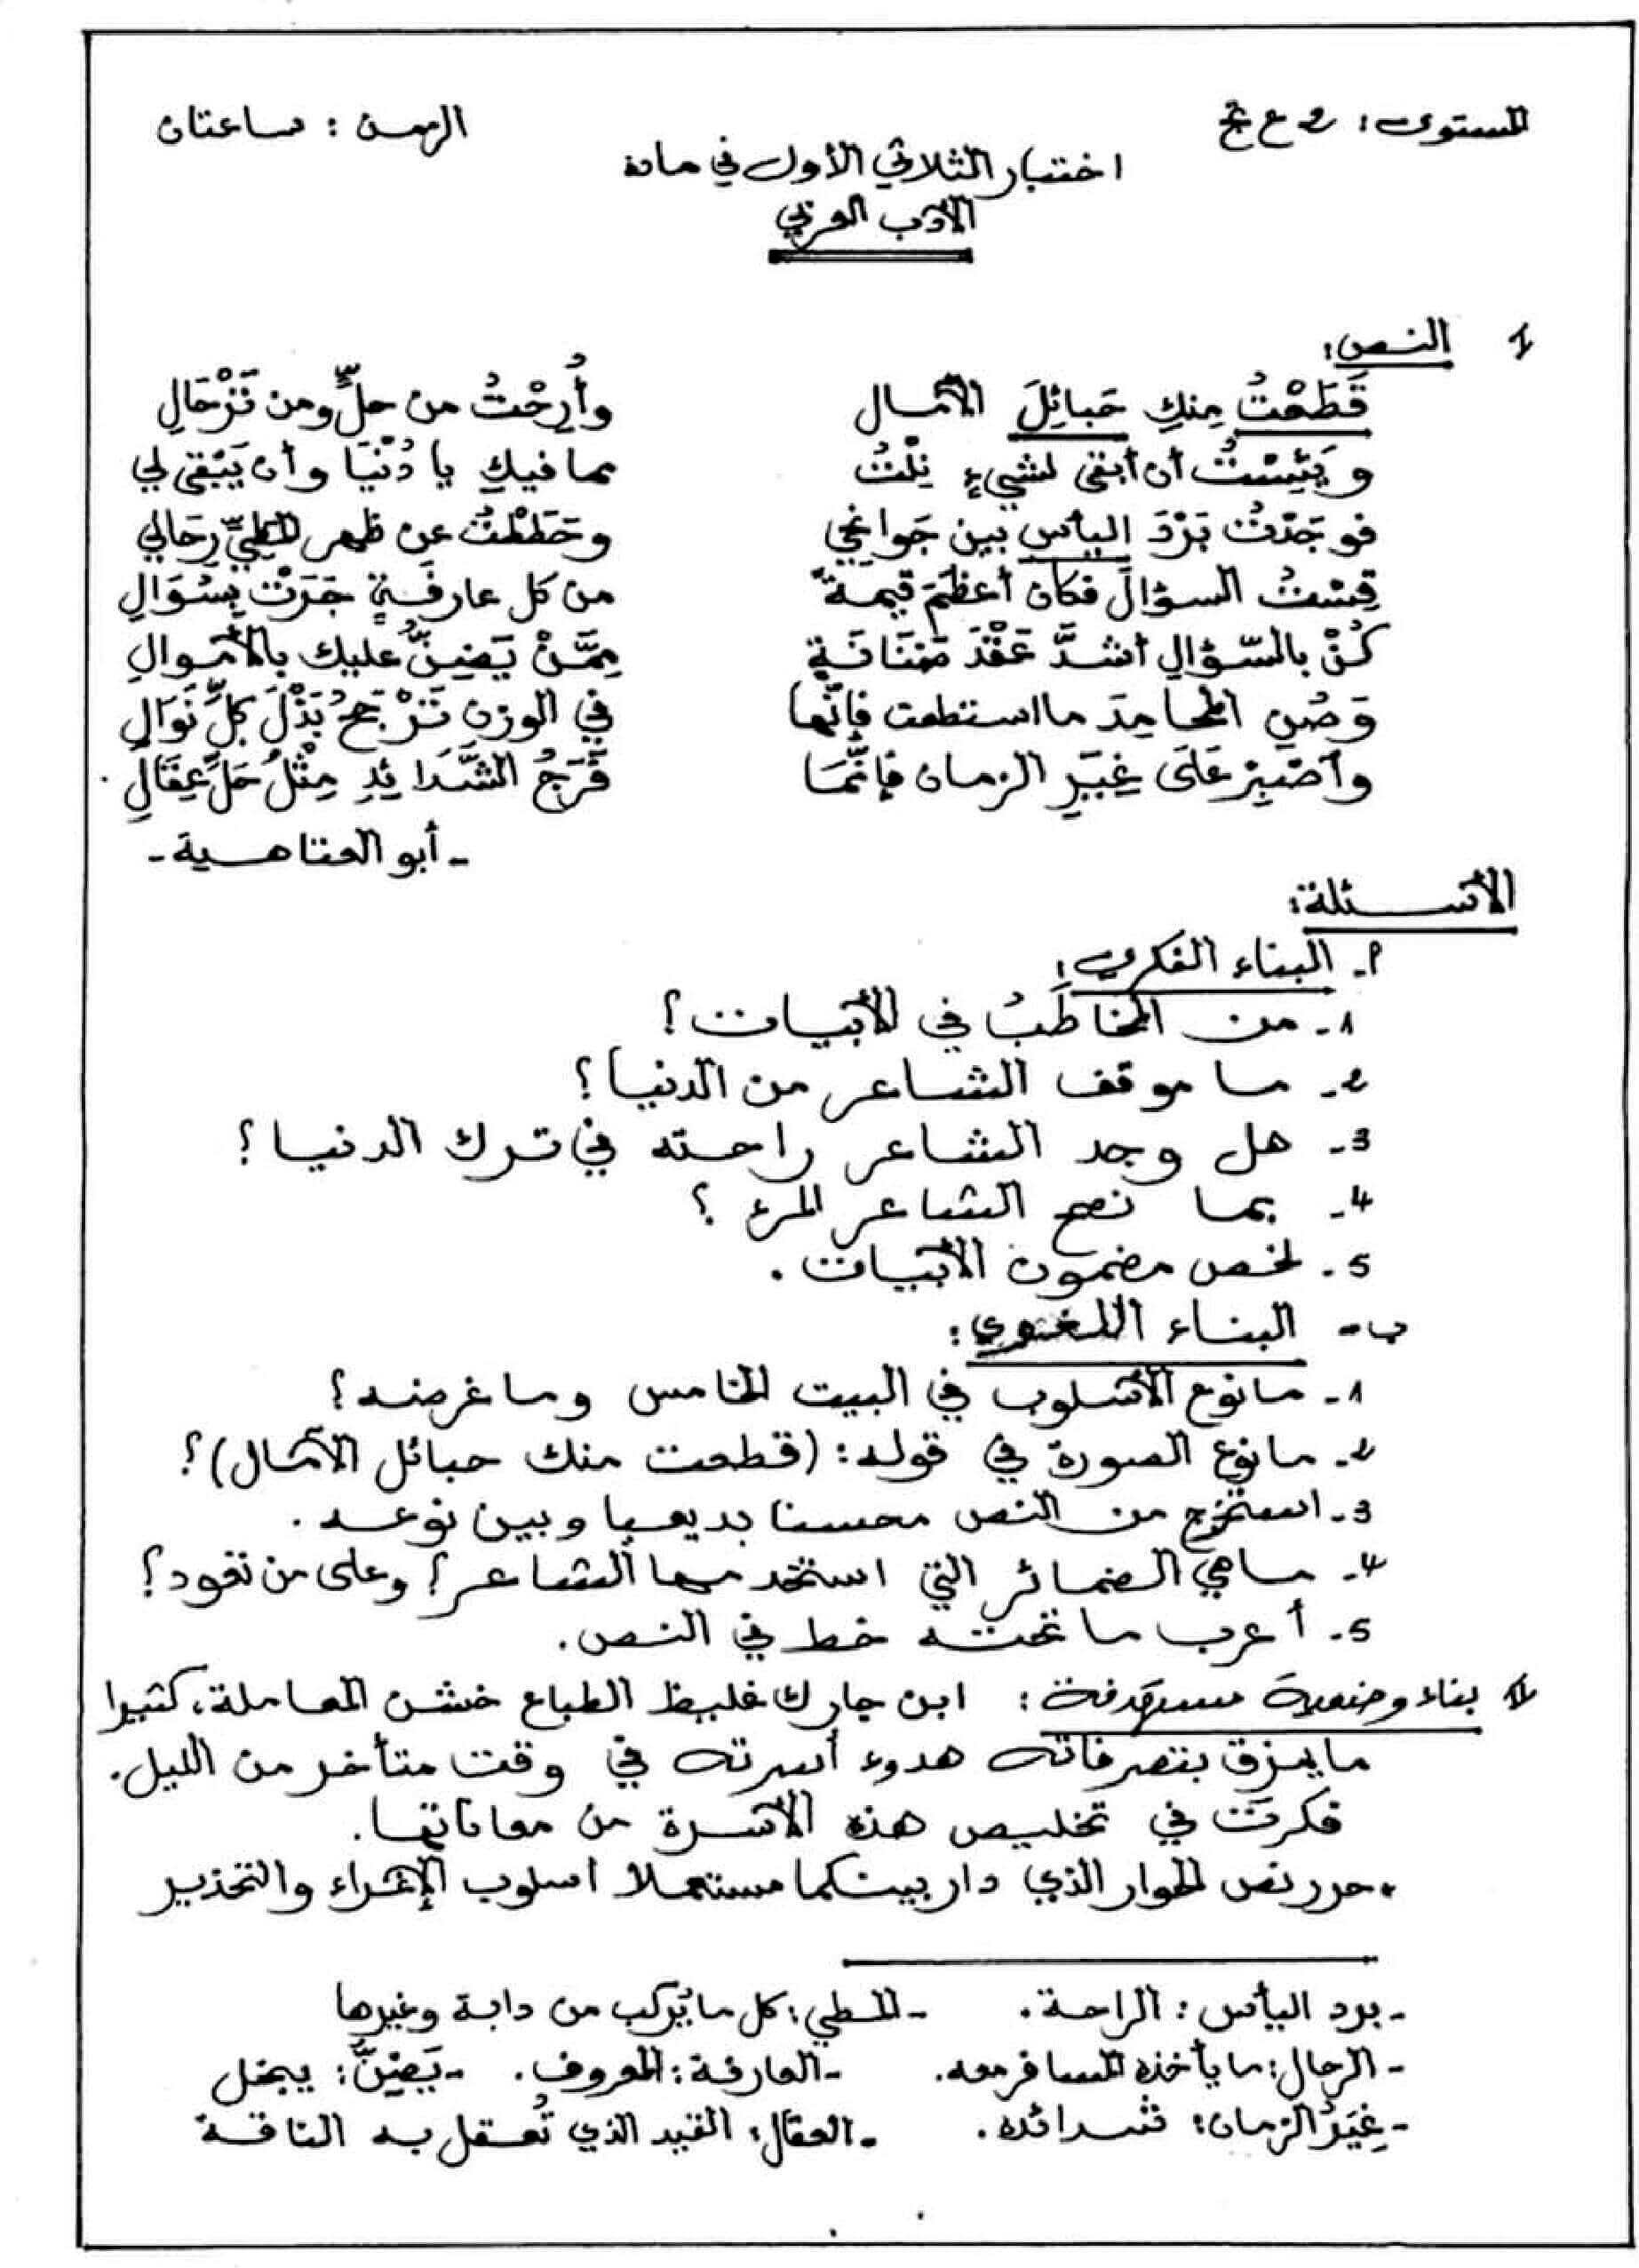 اختبار الفصل الأول في اللغة العربية للسنة ثانية ثانوي النموذج 8